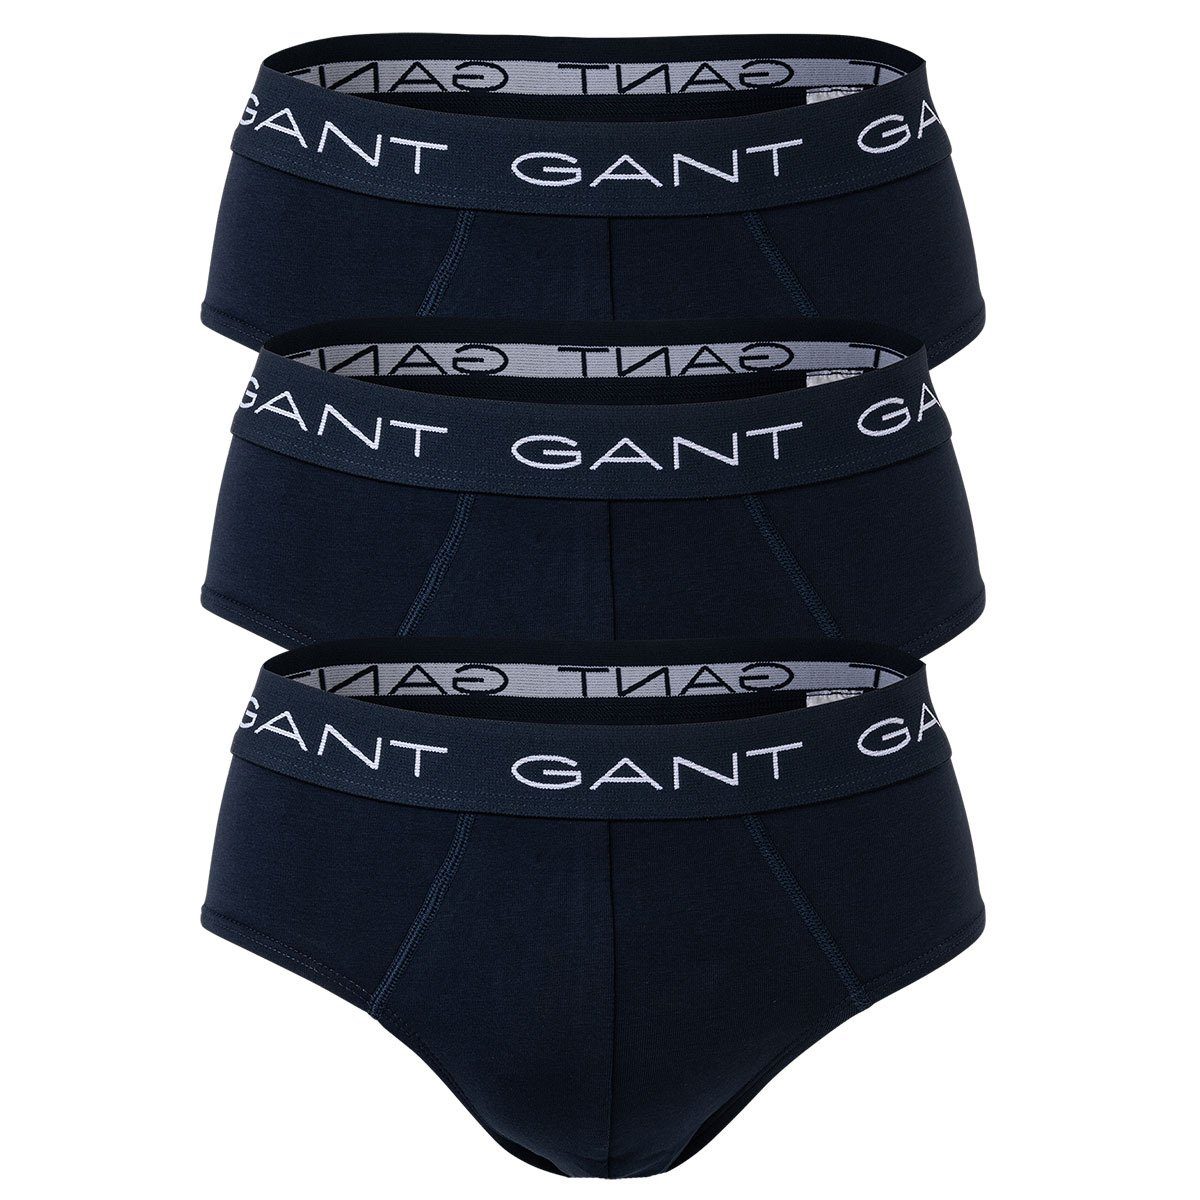 3er Slip Briefs, Cotton Marine - Slips, Gant Pack Herren Stretch